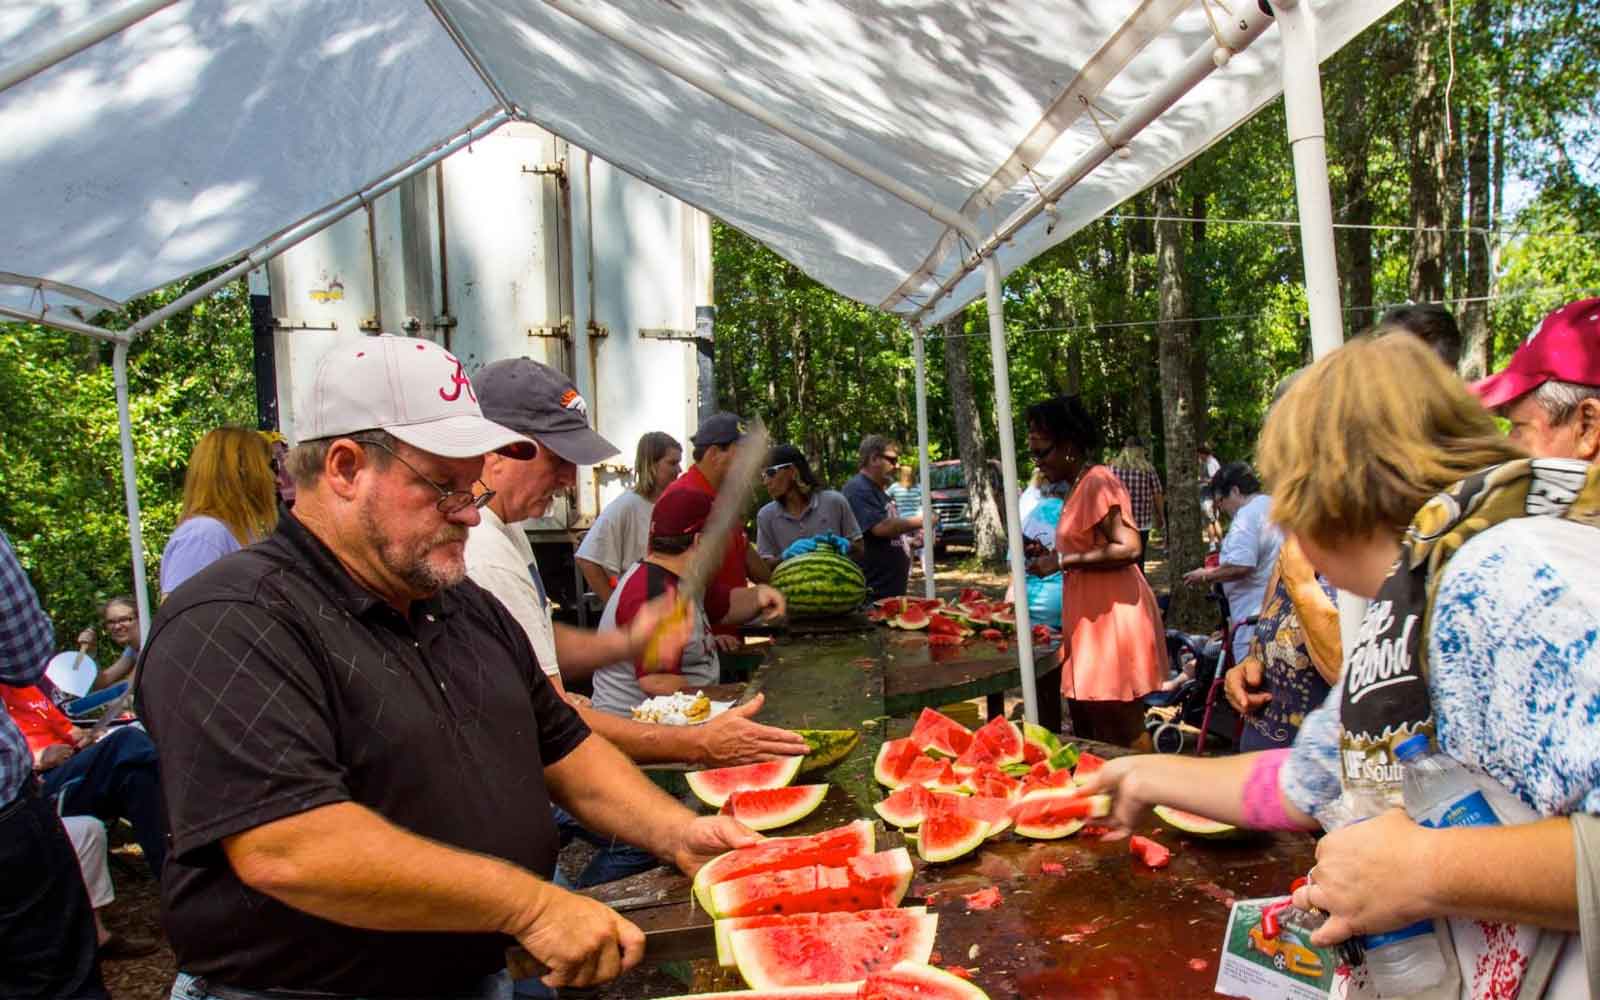 Grand Bay Watermelon Festival Announced